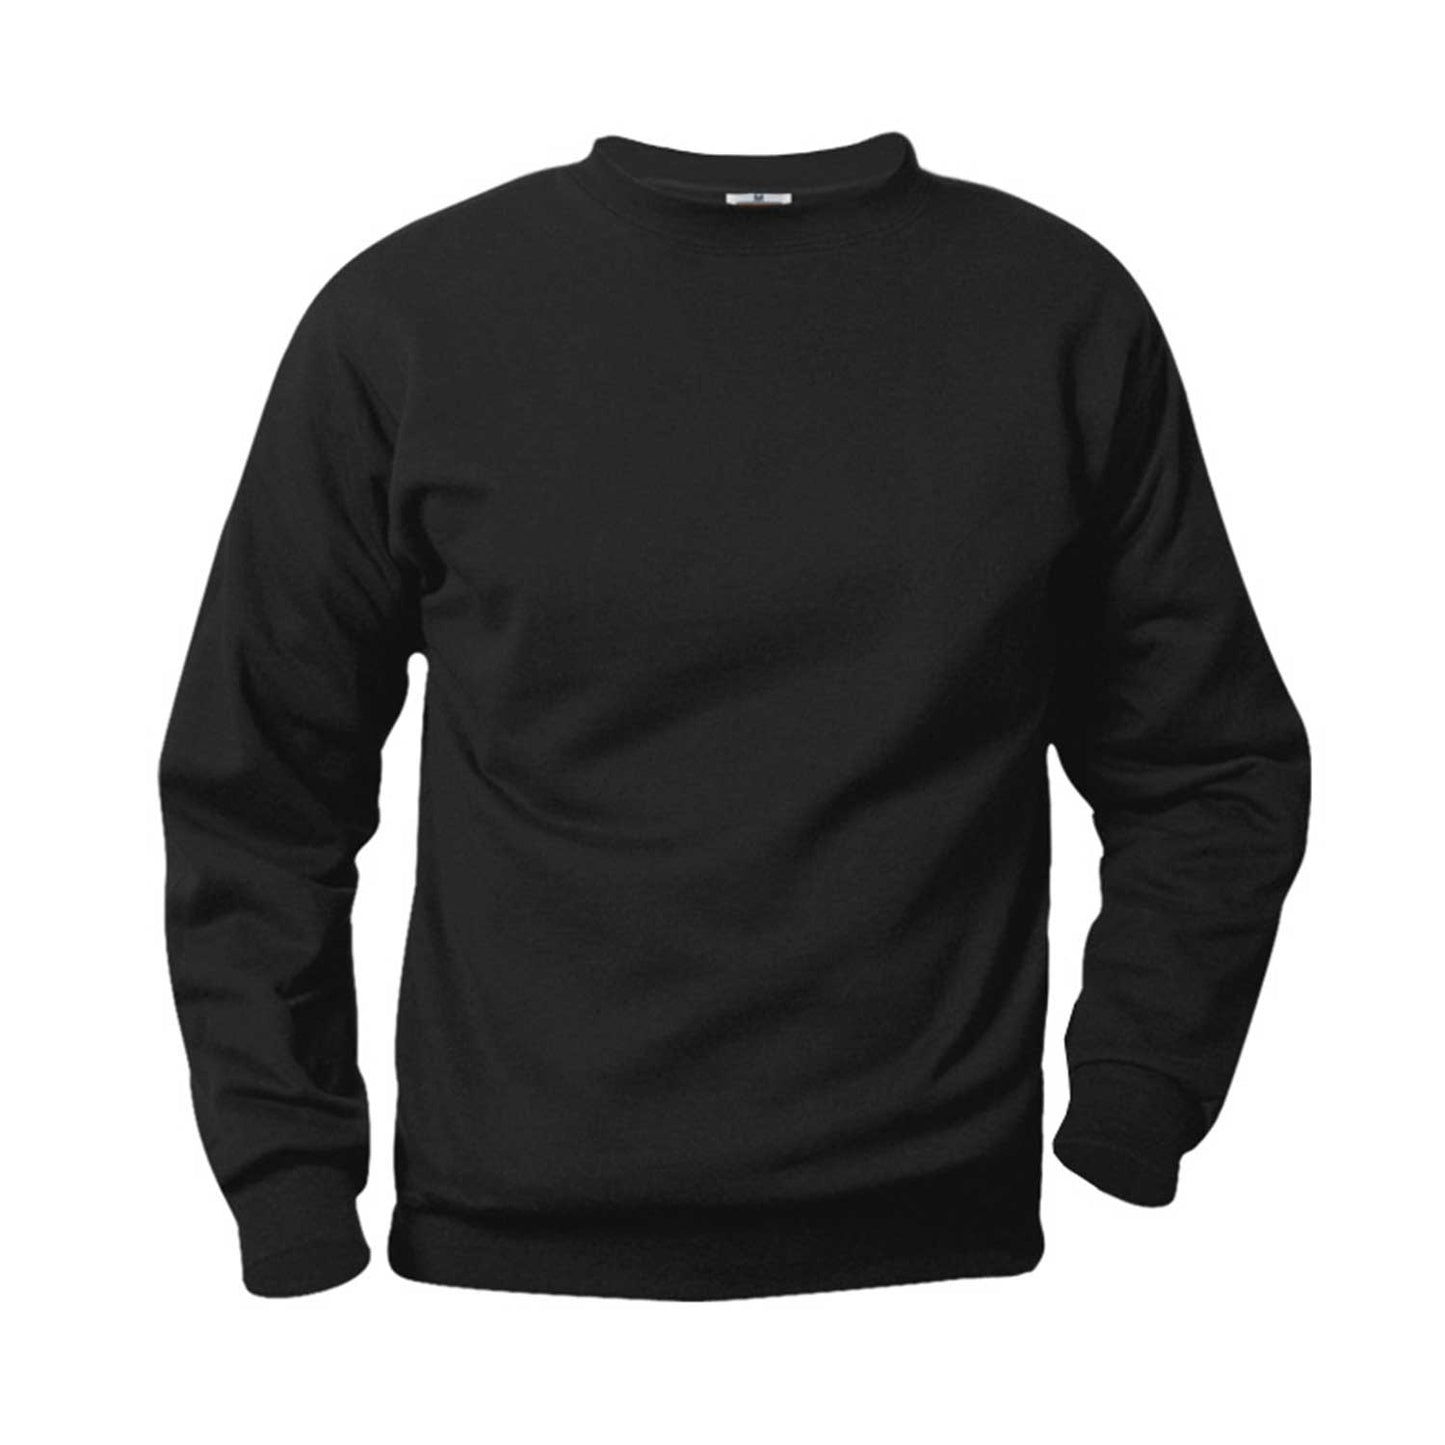 Unisex Crewneck Fleece Sweatshirt w/Logo - 1106